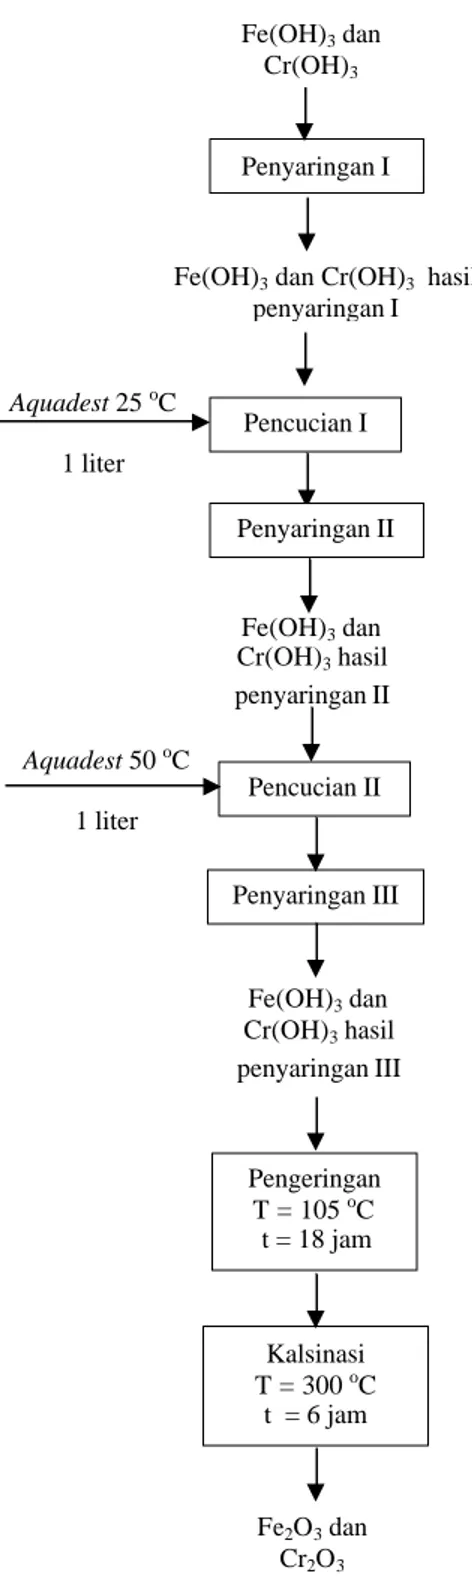 Gambar III.3 Diagram alir proses pembuatan katalis HTSC bagian II Penyaringan I Pencucian I Pengeringan T = 105 oC  t = 18 jam Kalsinasi T = 300 oC t  = 6 jam Fe2O3 dan Cr2O3Aquadest 25 oC   1 liter Fe(OH)3 dan Cr(OH)3 hasil penyaringan II Pencucian II Aqu